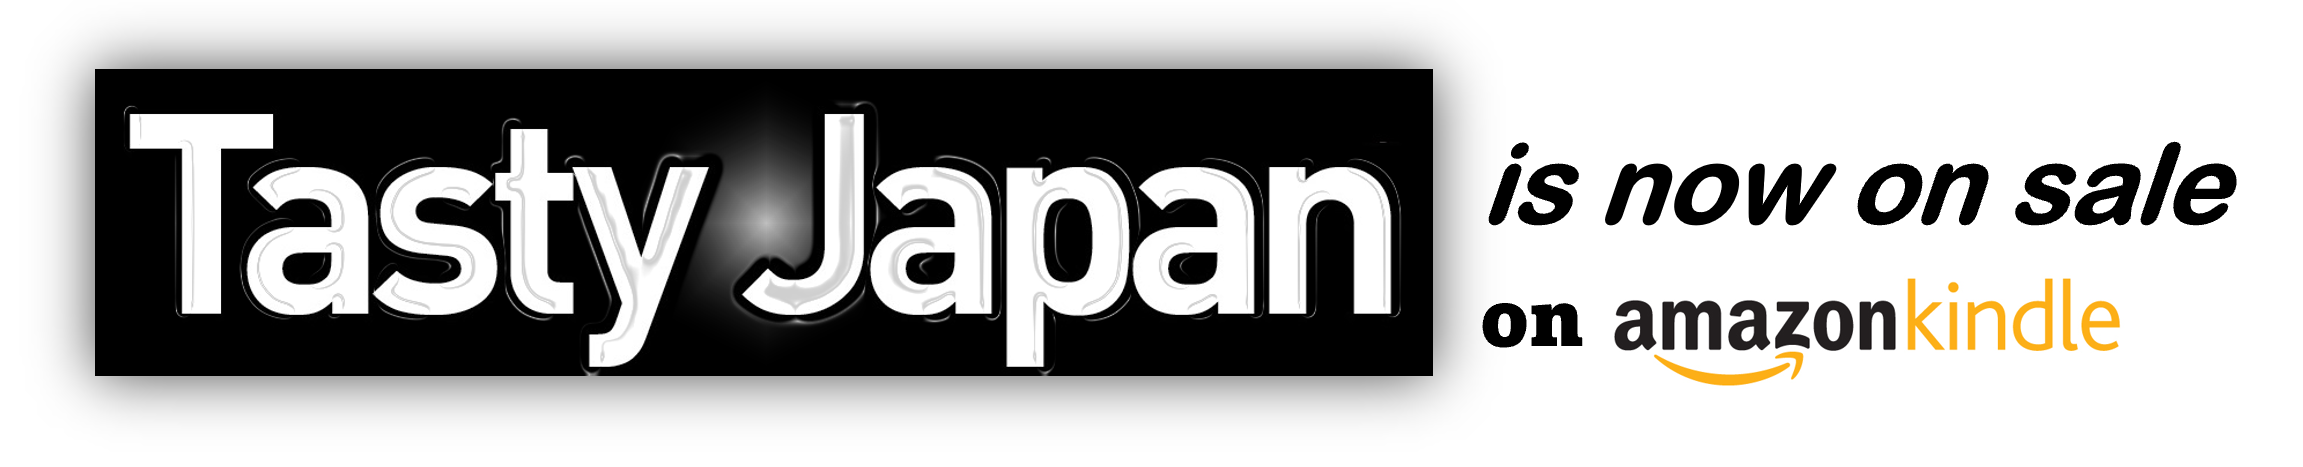 Tasty Japan is now on sale on amazon kindle